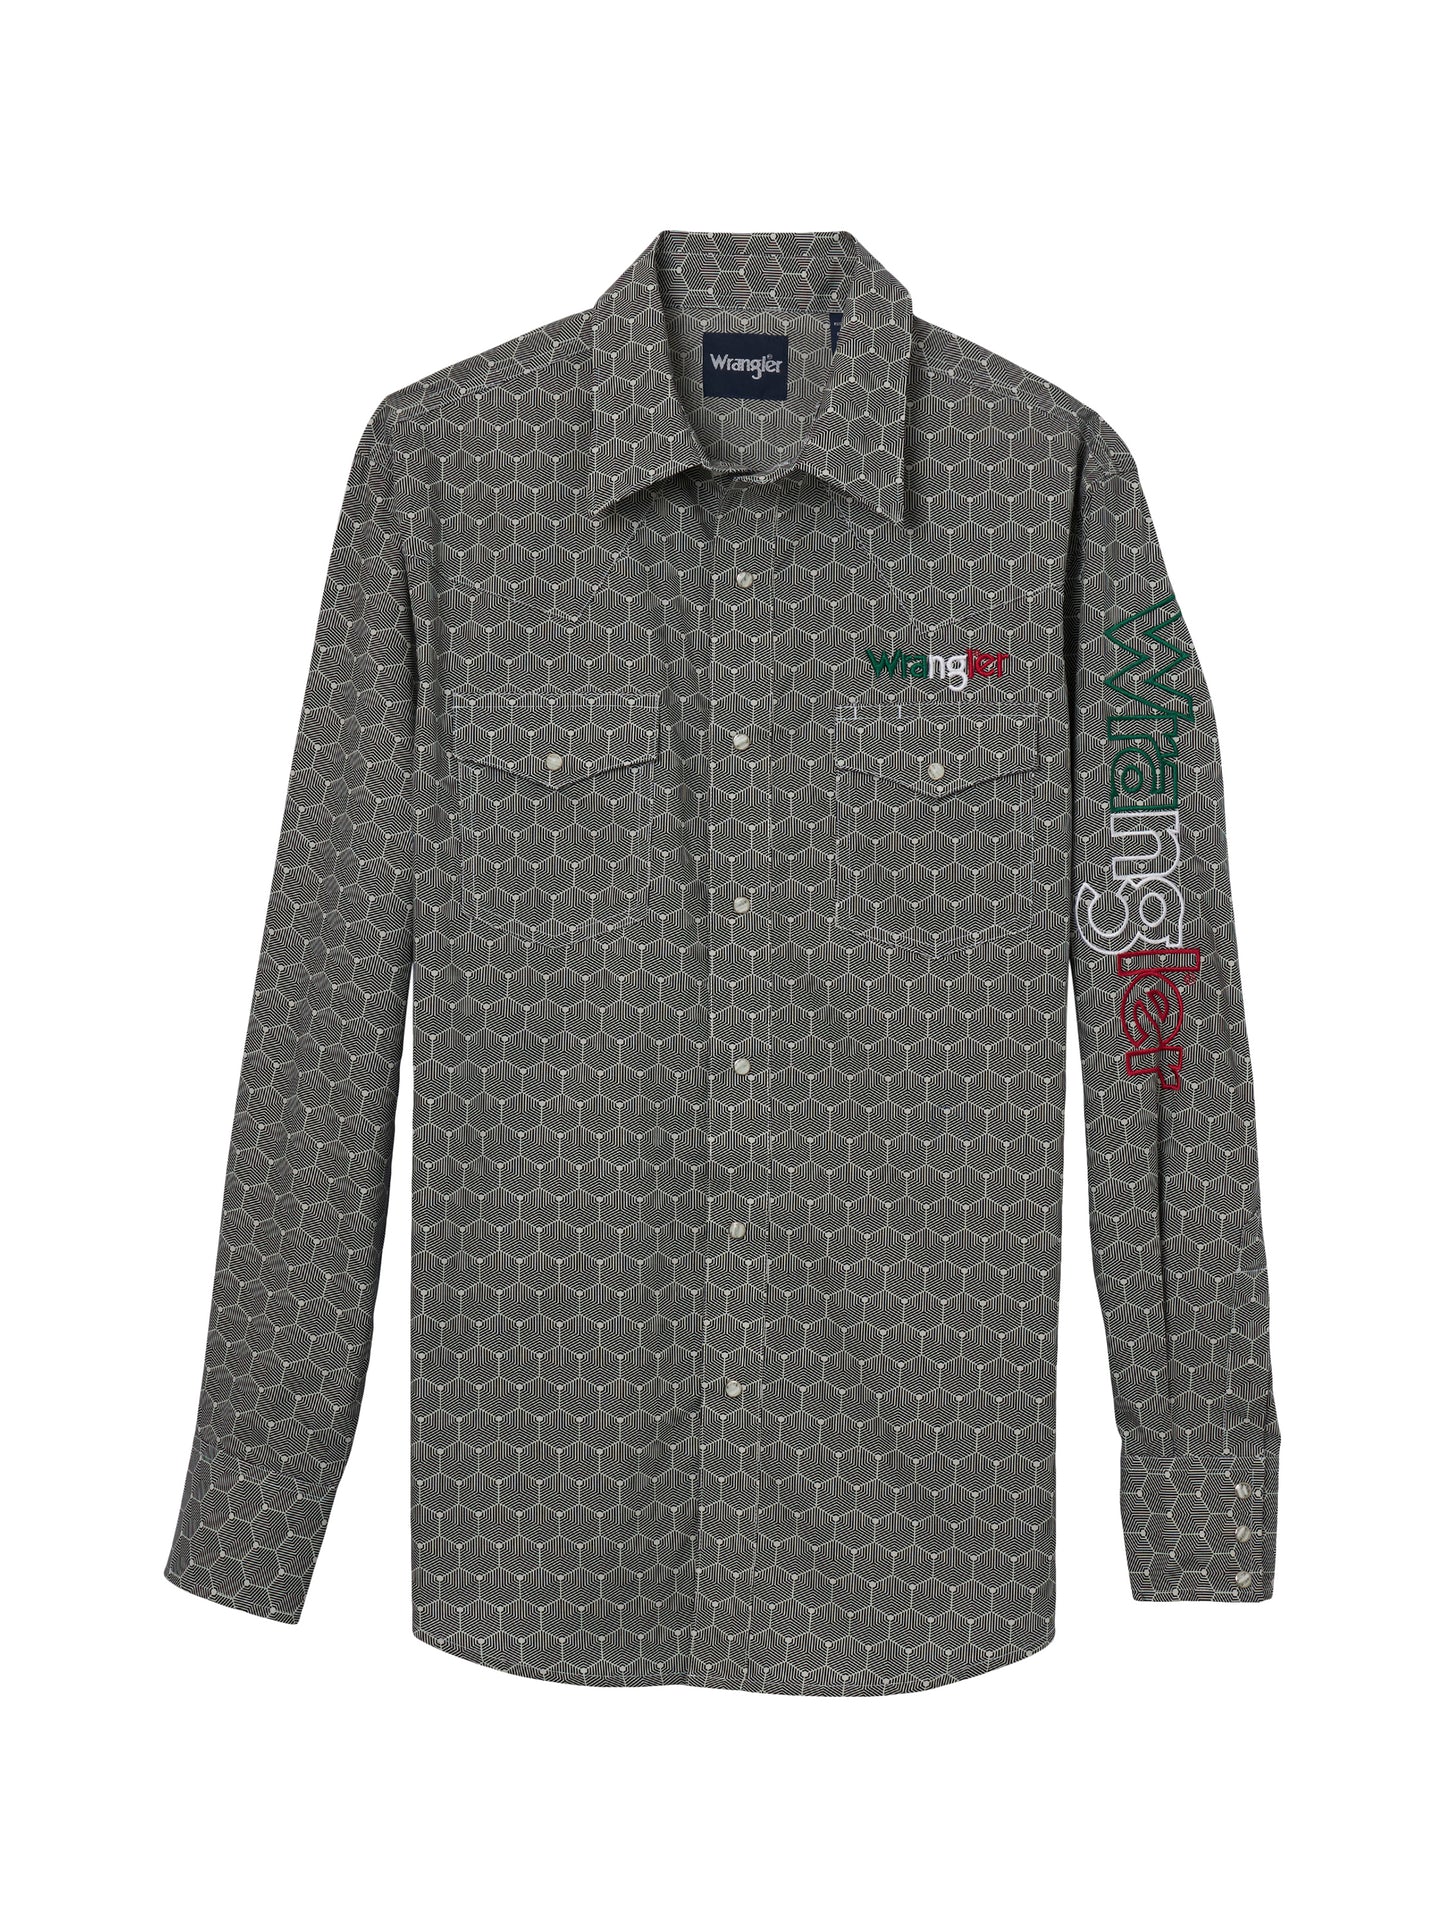 Wrangler Mexico Logo Grey Long Sleeve Button Down Shirt